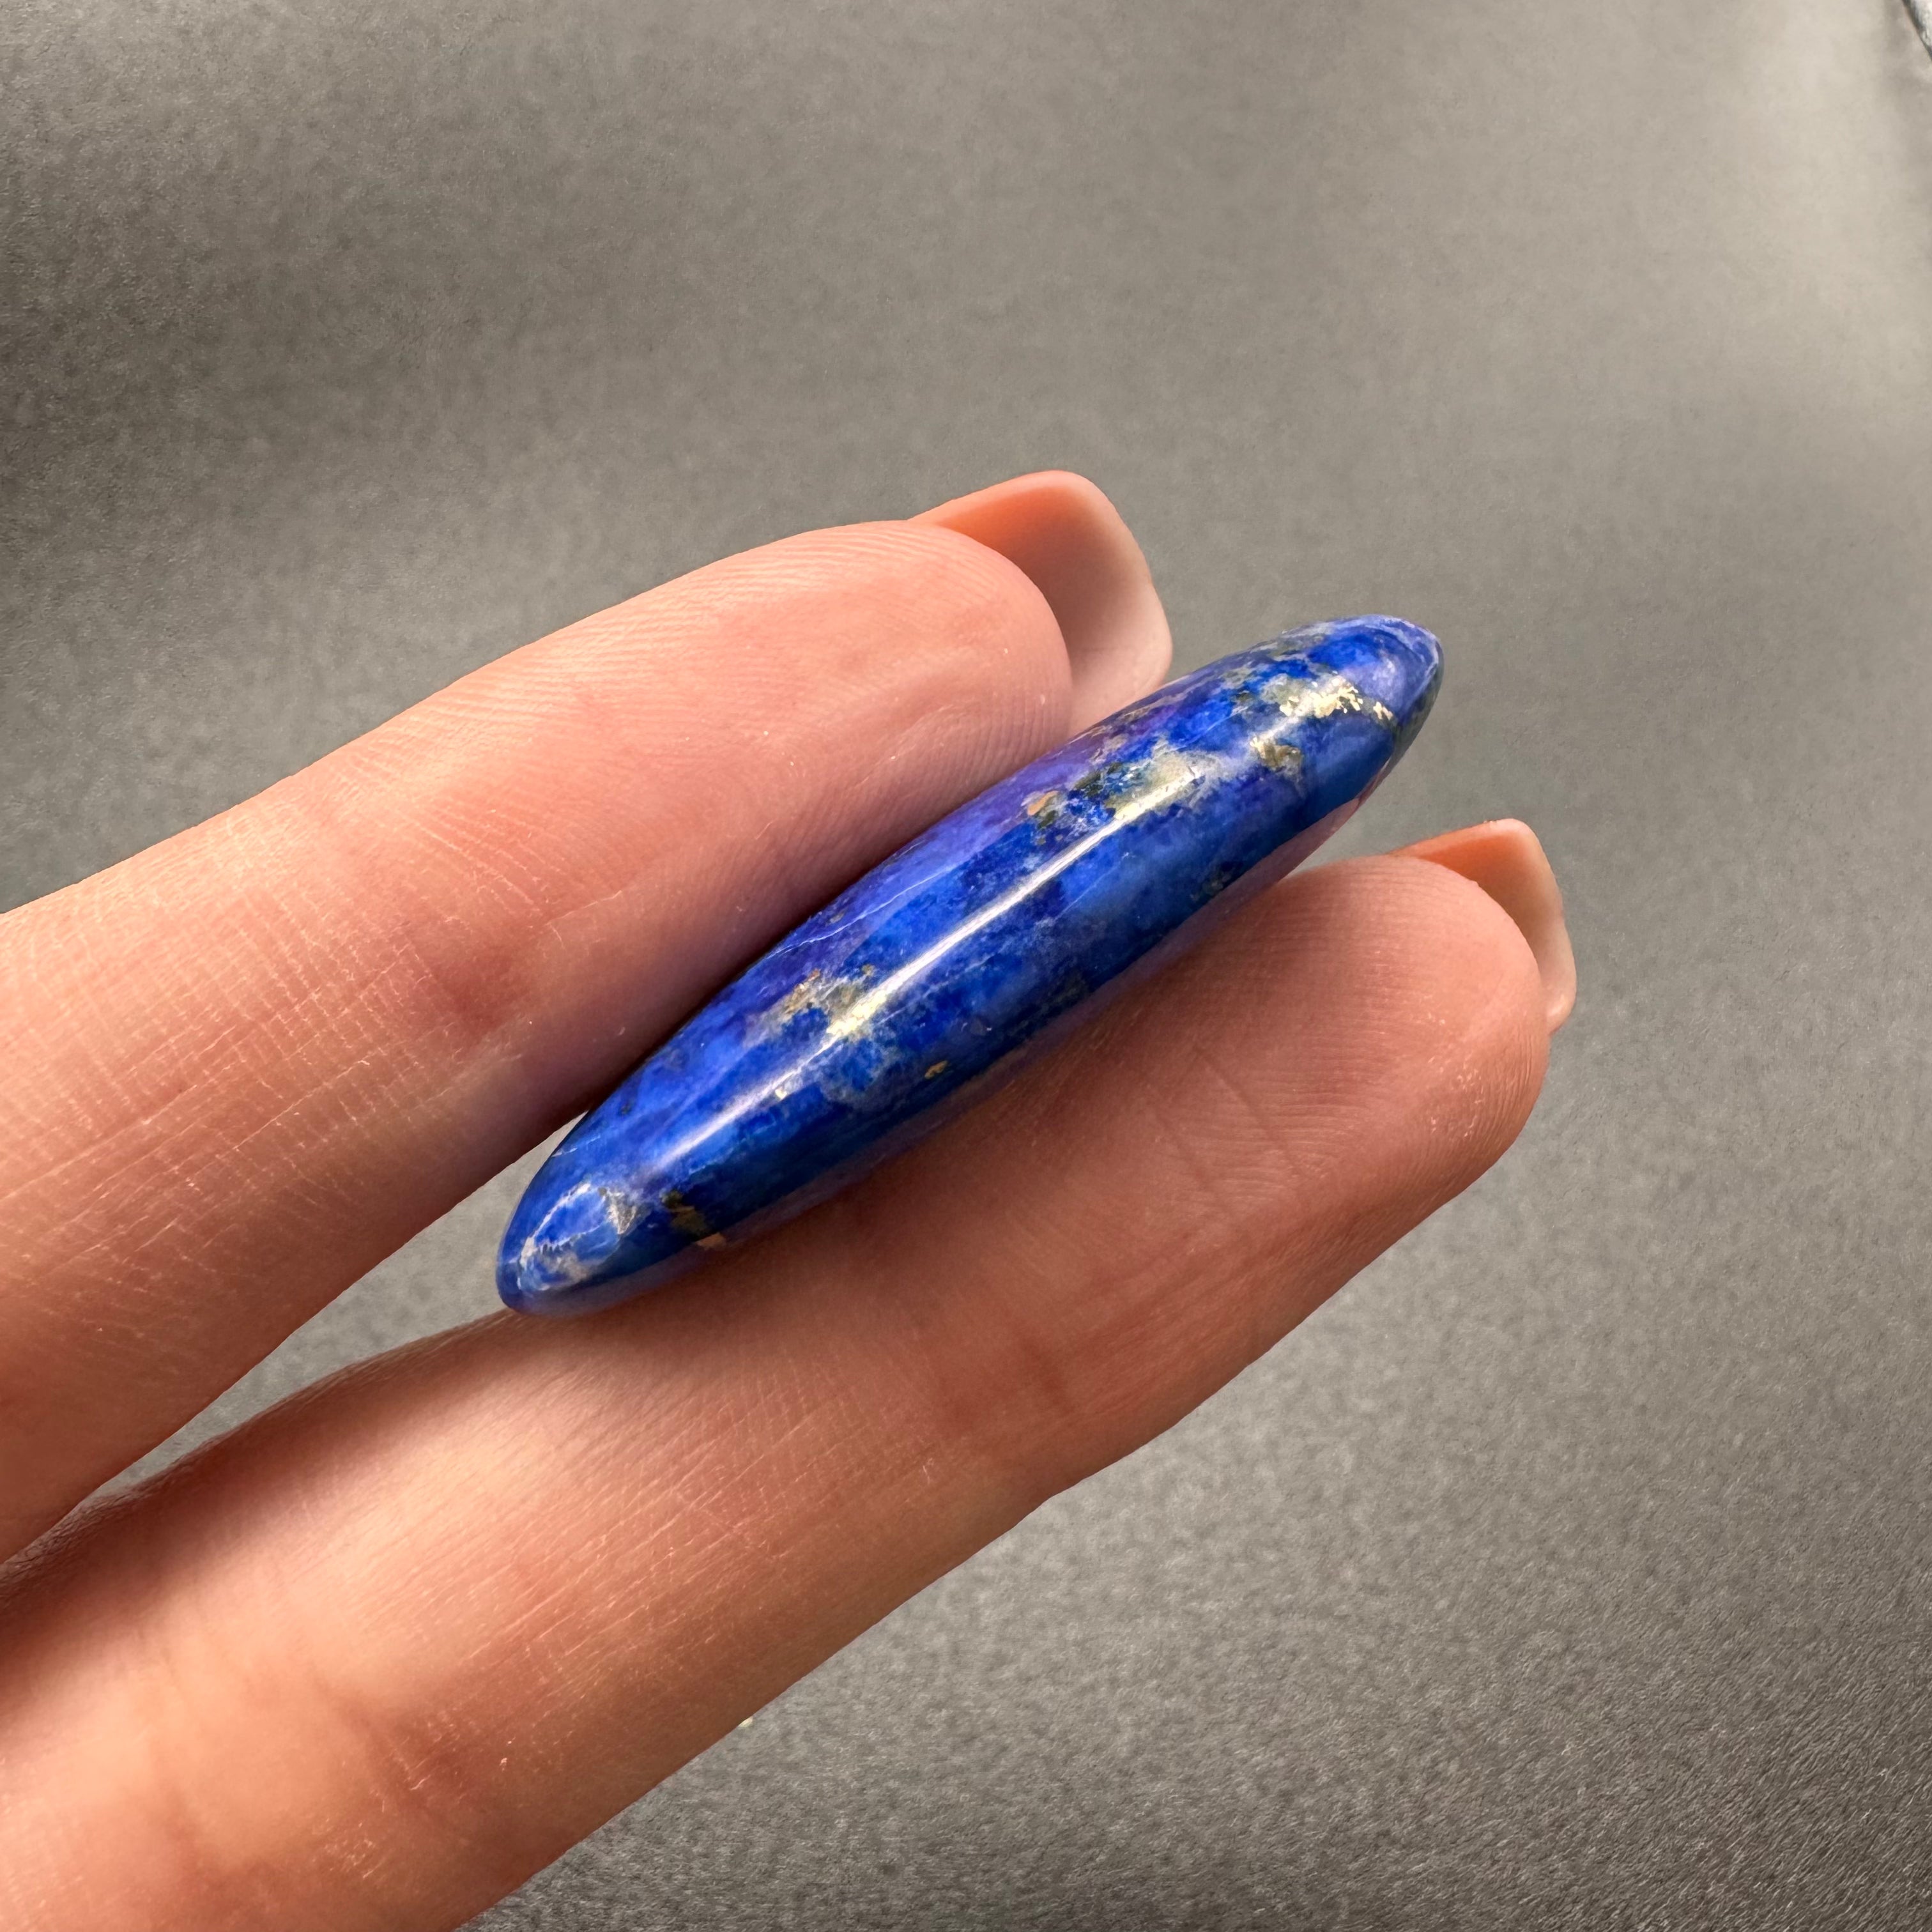 Lapis Lazuli Medicine Piece - 174